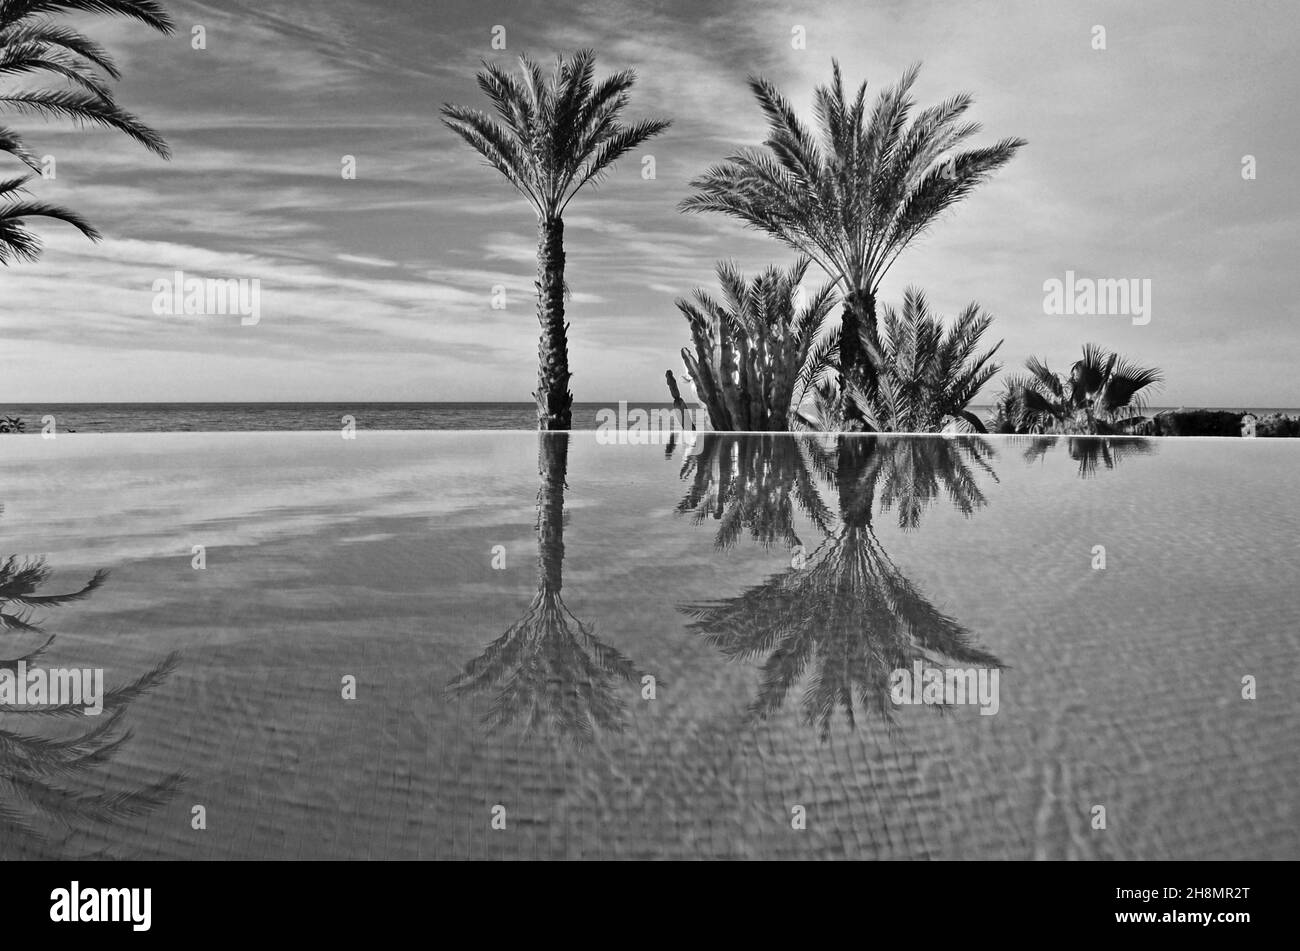 Piscina a sfioro con palme sul mare, piscina sul mare, palme riflesse in piscina, riflessione in acqua, Andalusia, Spagna Foto Stock